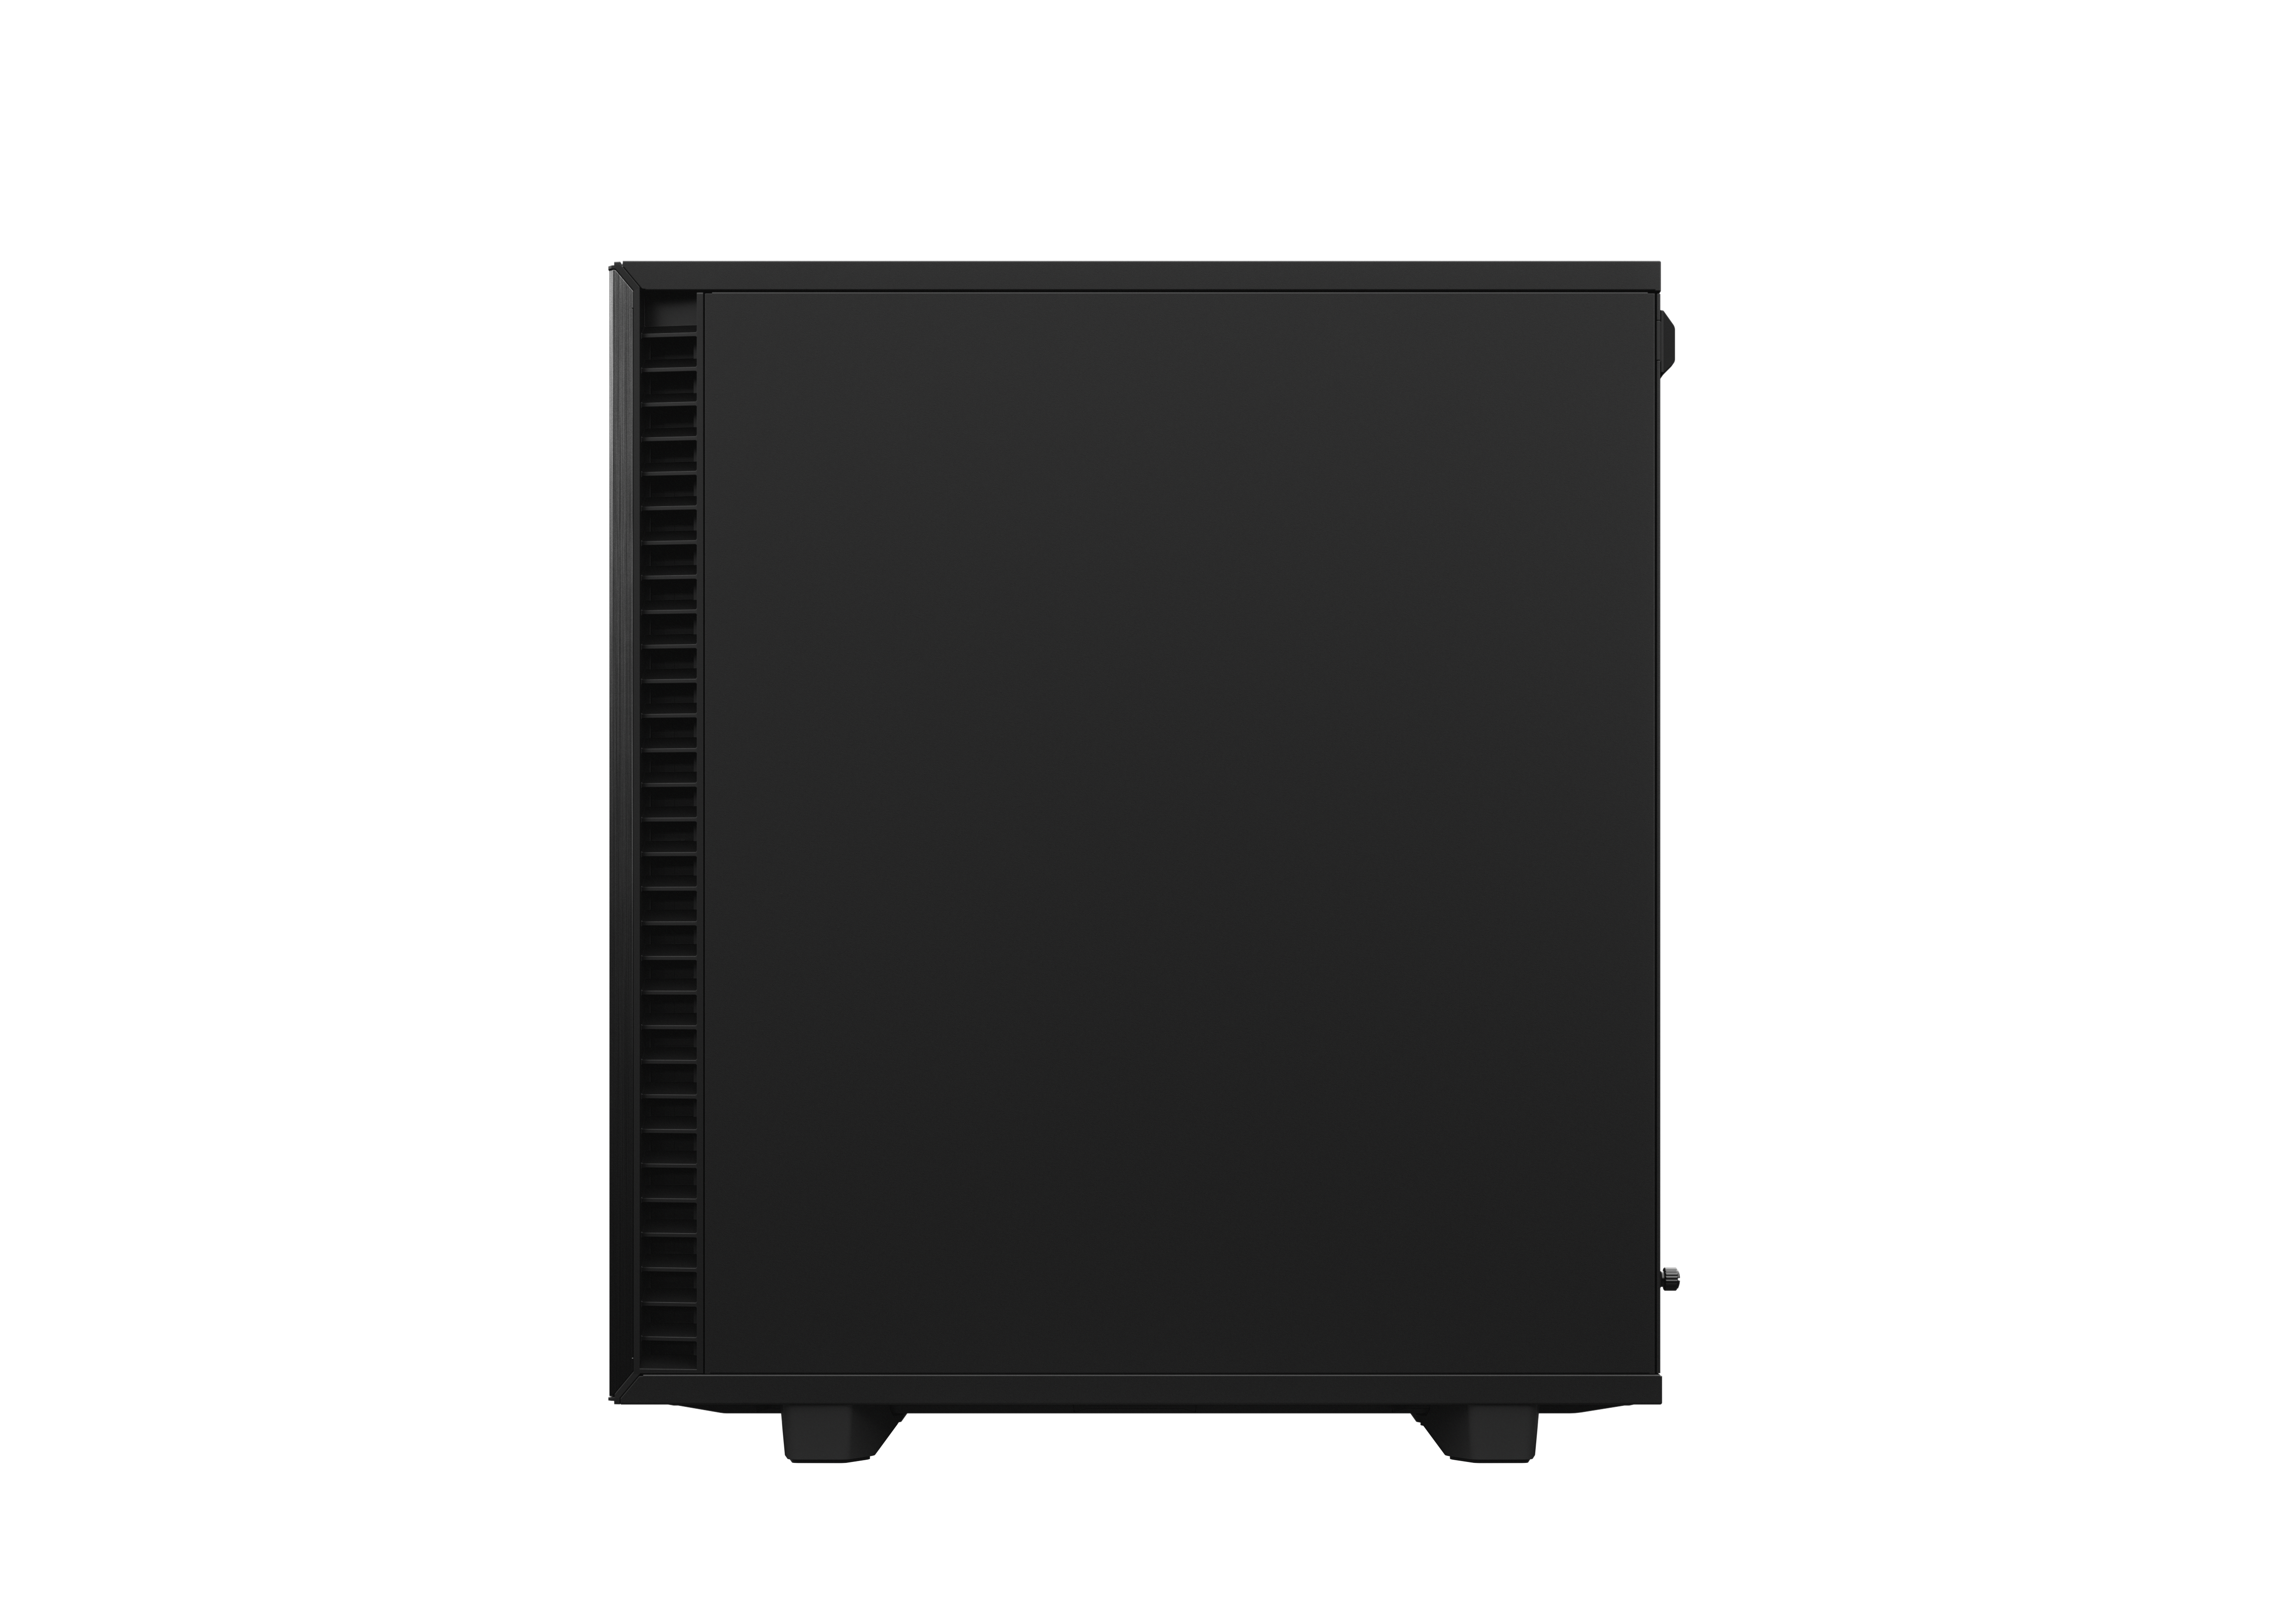 Fractal Design - Fractal Design Define 7 Compact Mid-Tower Case - Black